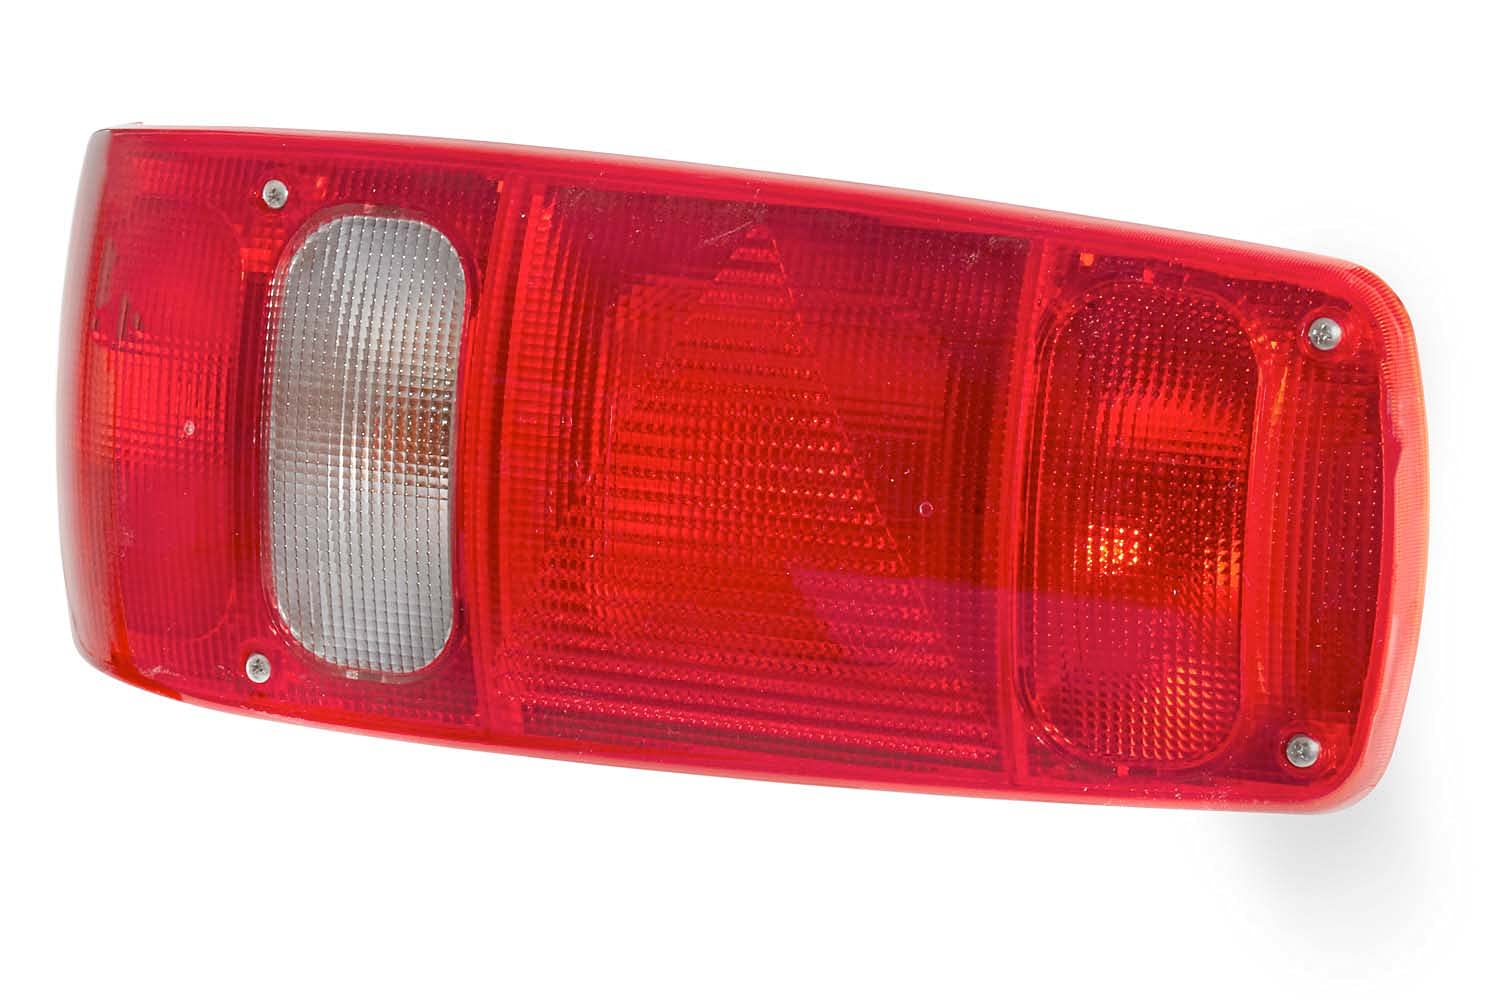 HELLA - Heckleuchte - Caraluna I - Glühlampe - 12V - Einbau/geschraubt - Lichtscheibenfarbe: weiß/rot - Stecker: Flachstecker - links - Menge: 1 - 2VA 007 502-011